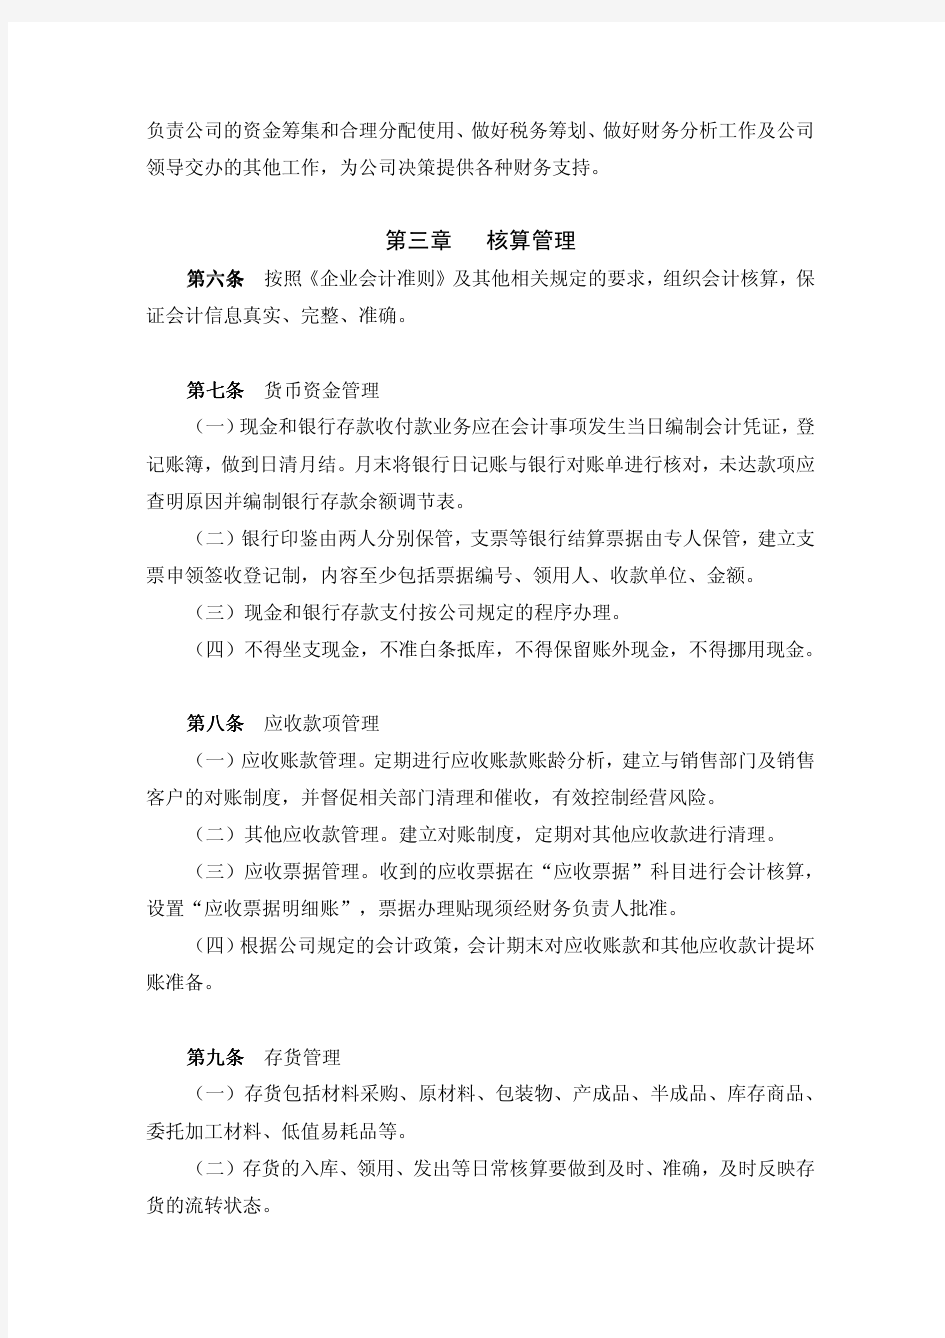 上海医药集团股份有限公司财务管理制度